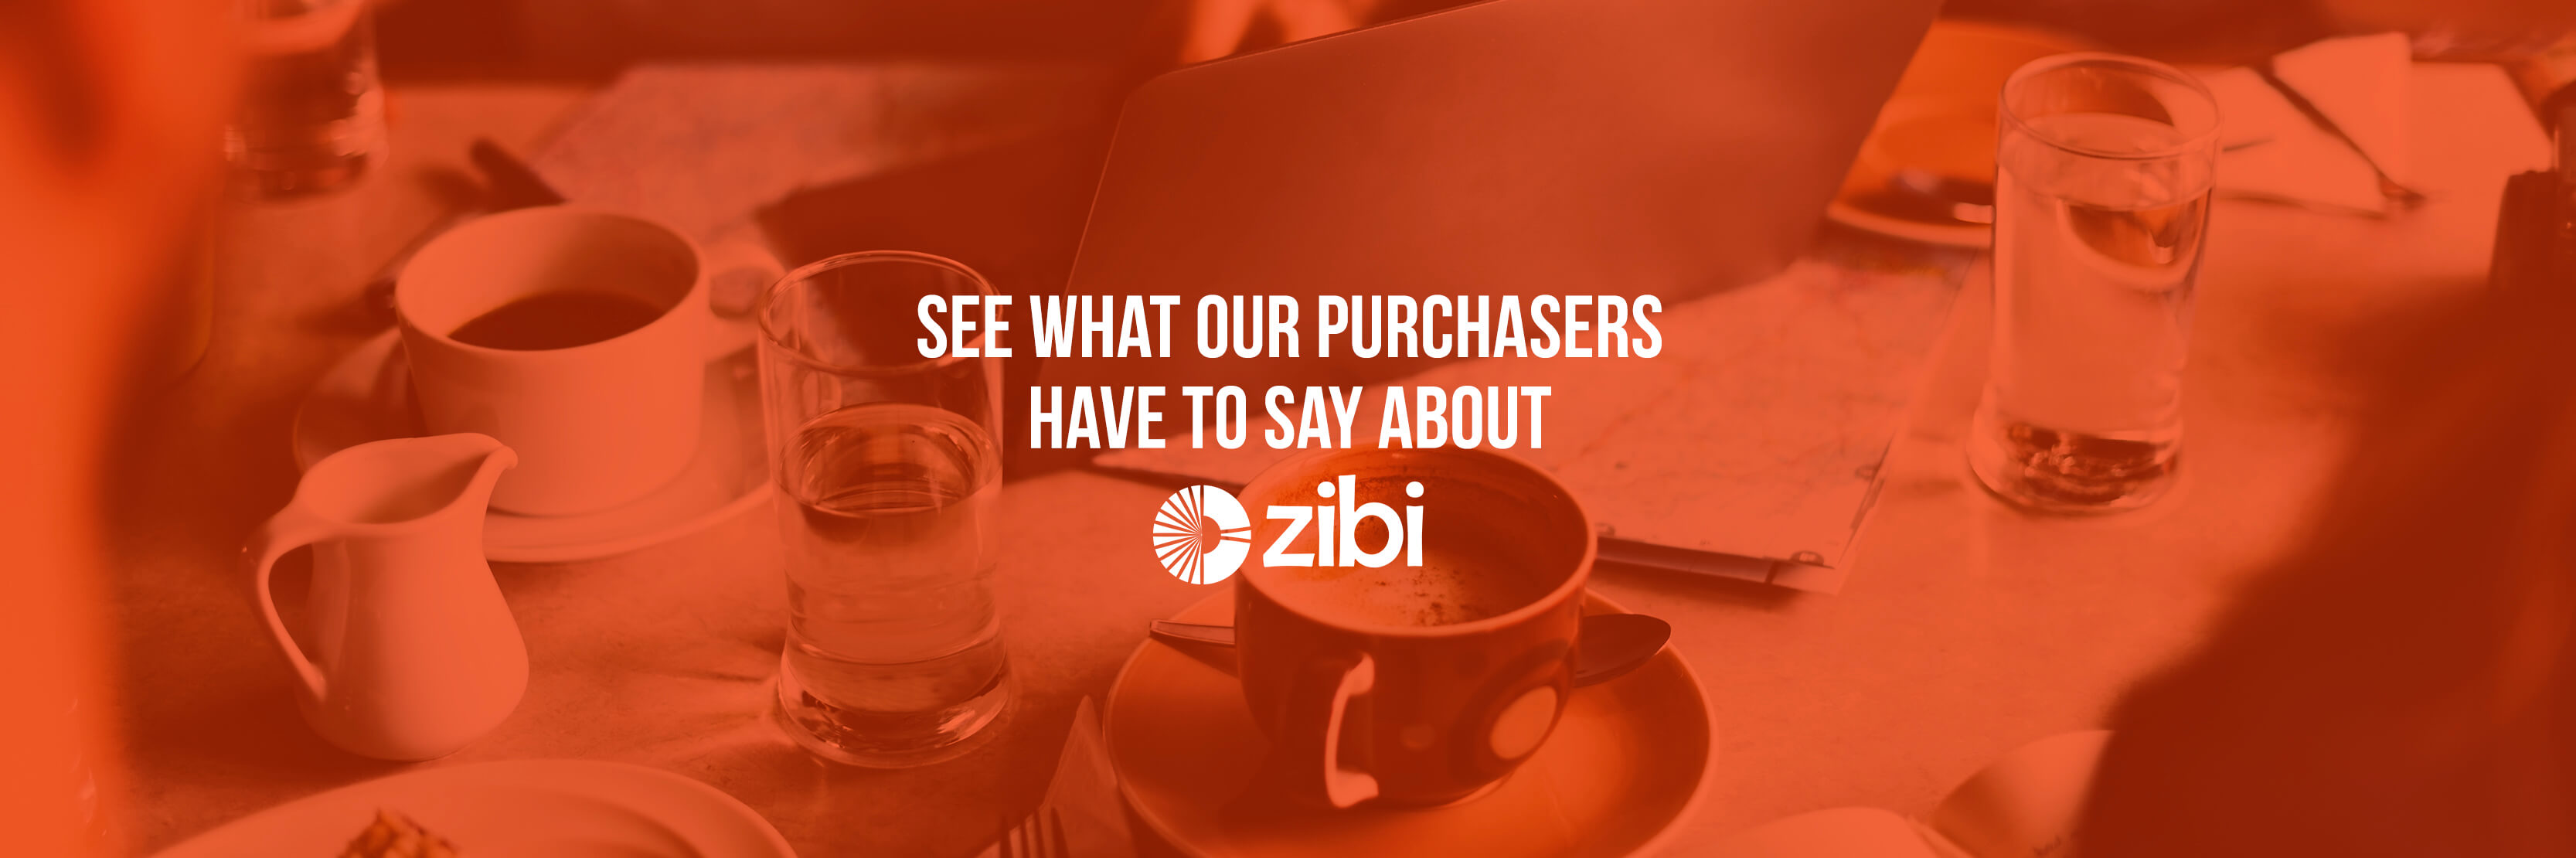 zibi-condo-ottawa-sale-purchasers-top-sm